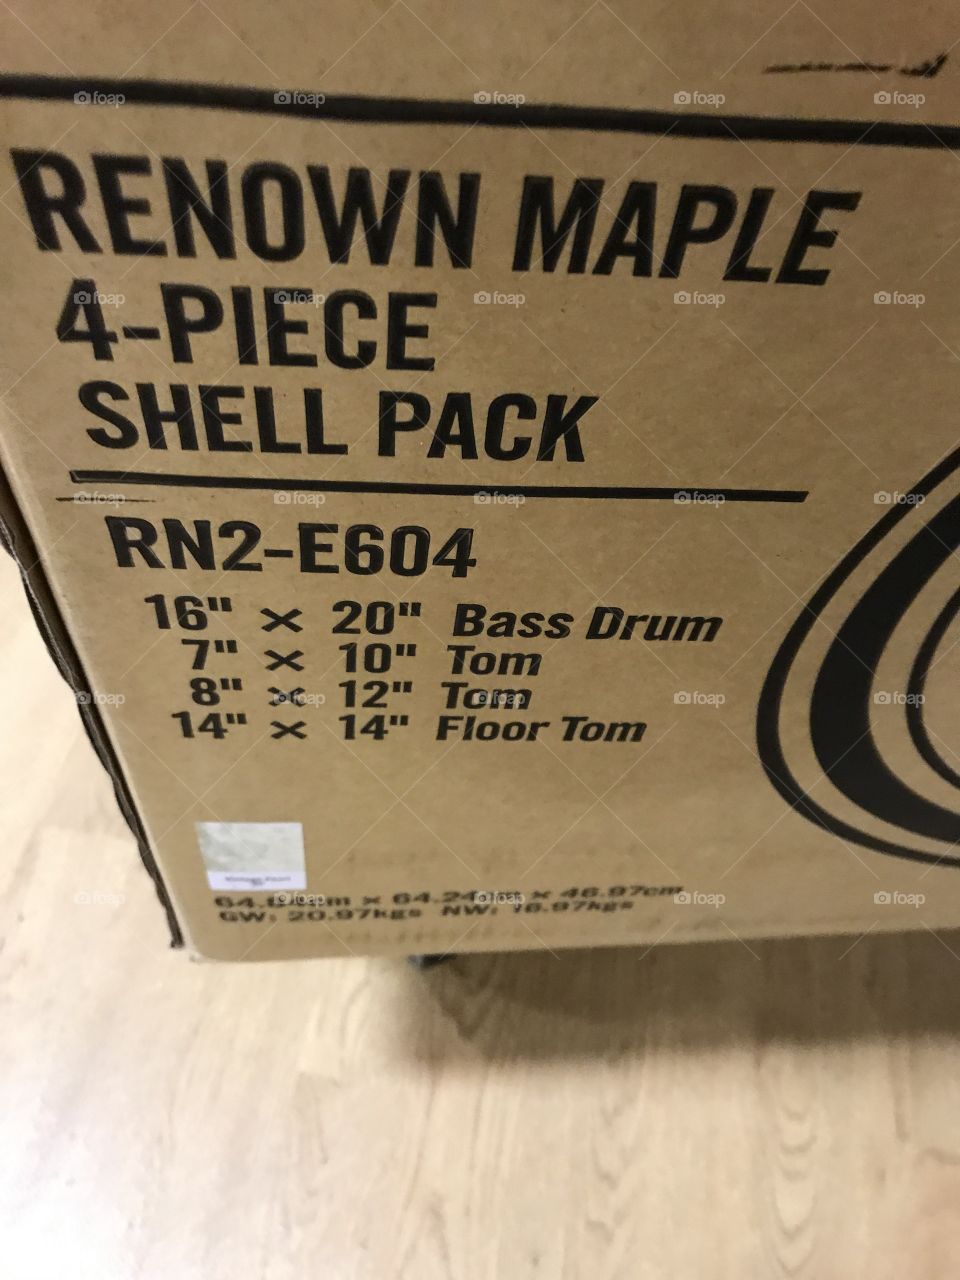 Drums?